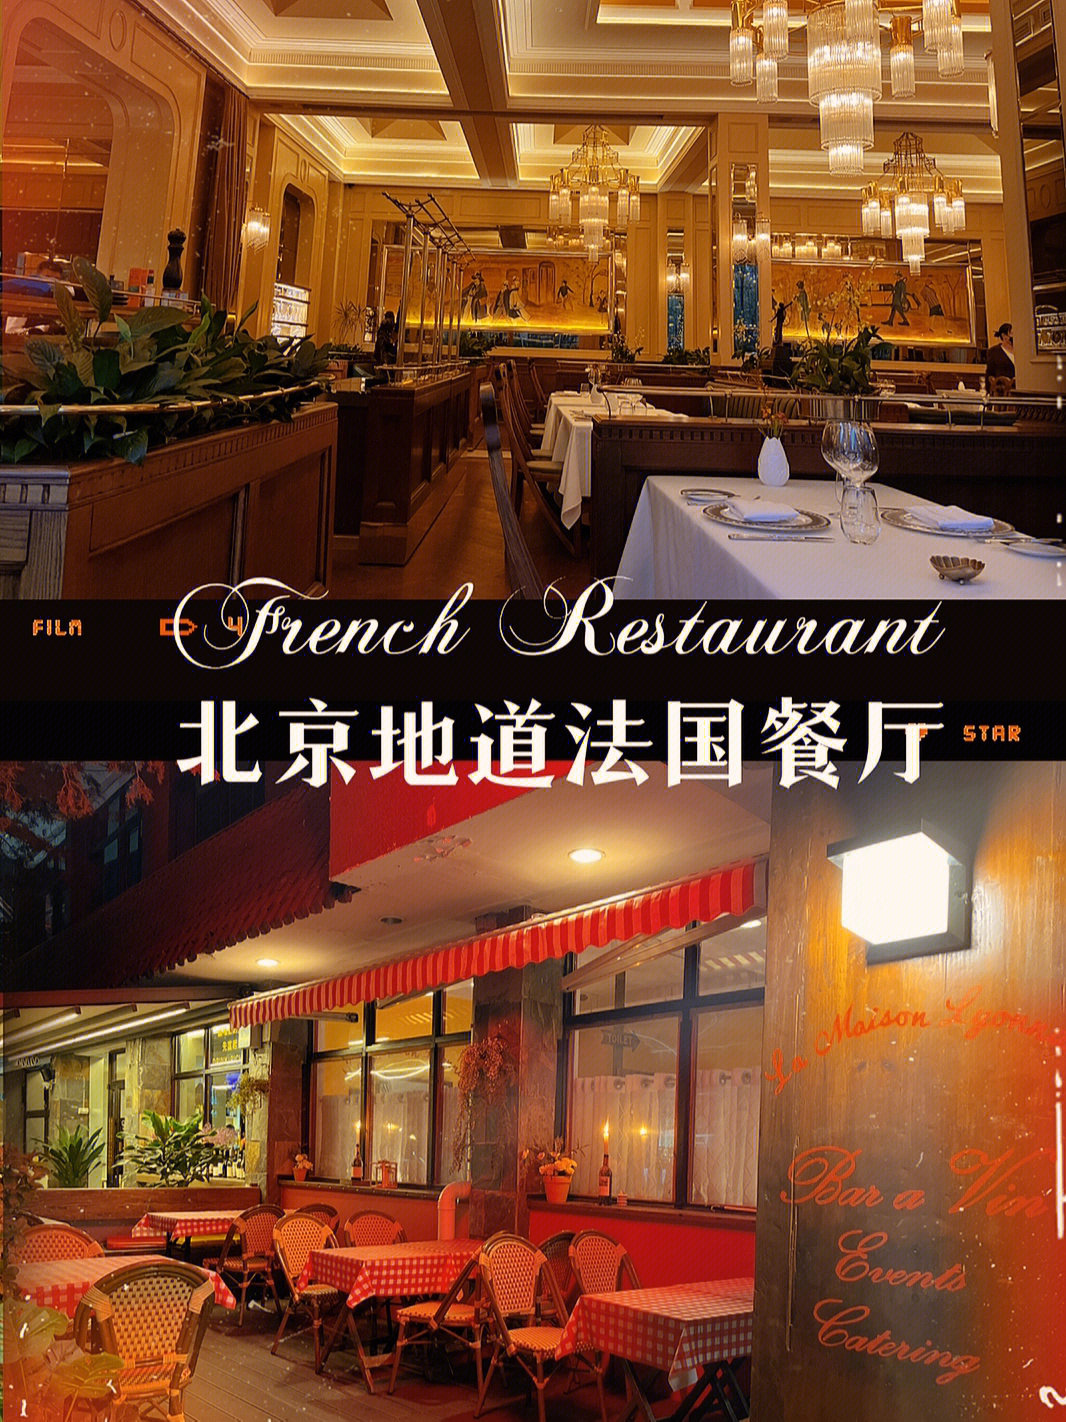 北京福楼法餐厅菜单图片